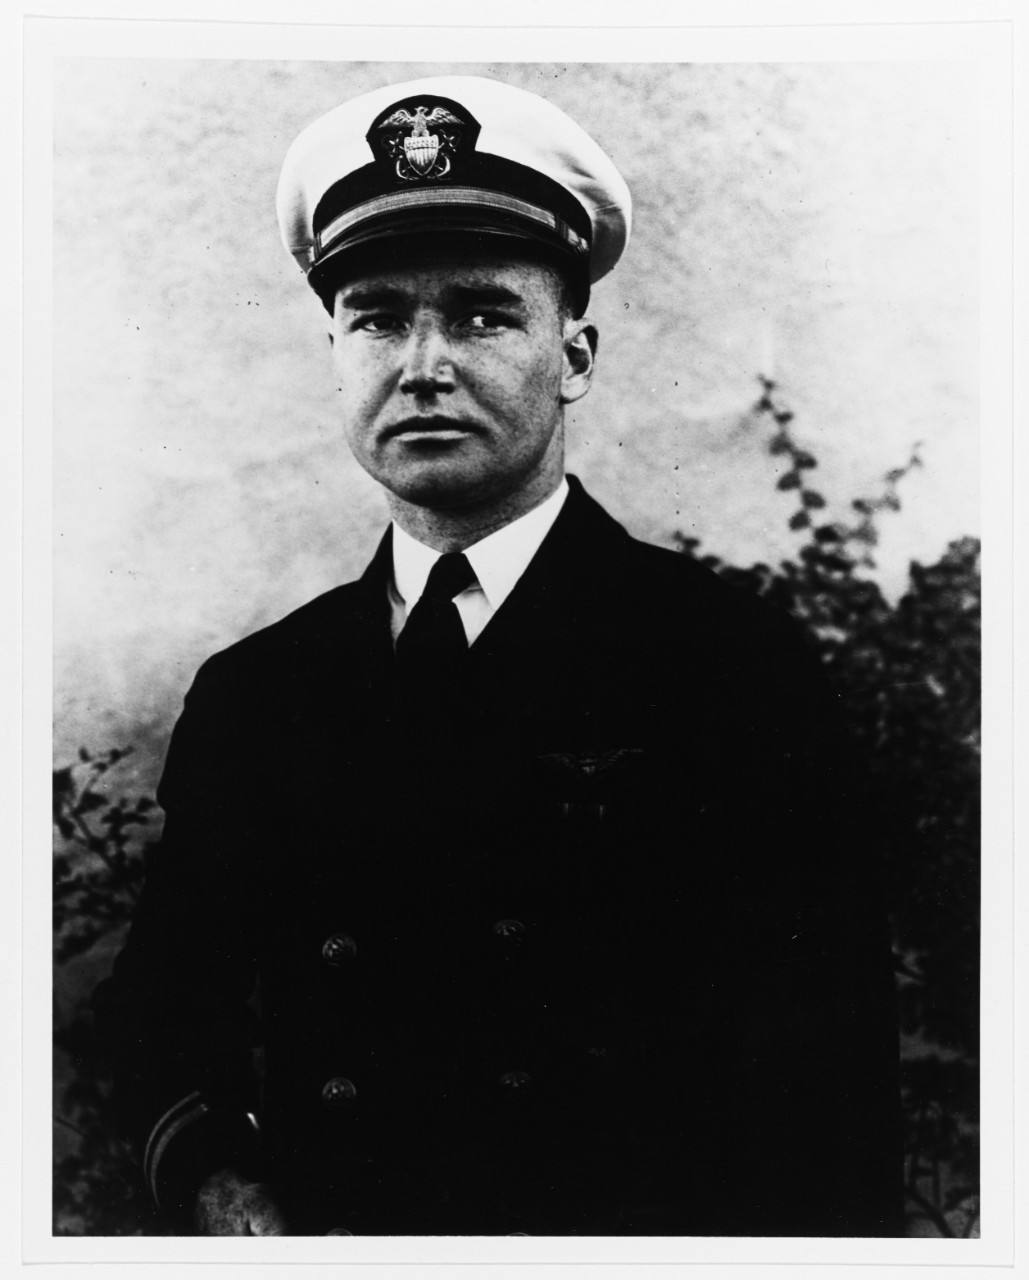 Lieutenant Junior Grade William G. Tomlinson, USN